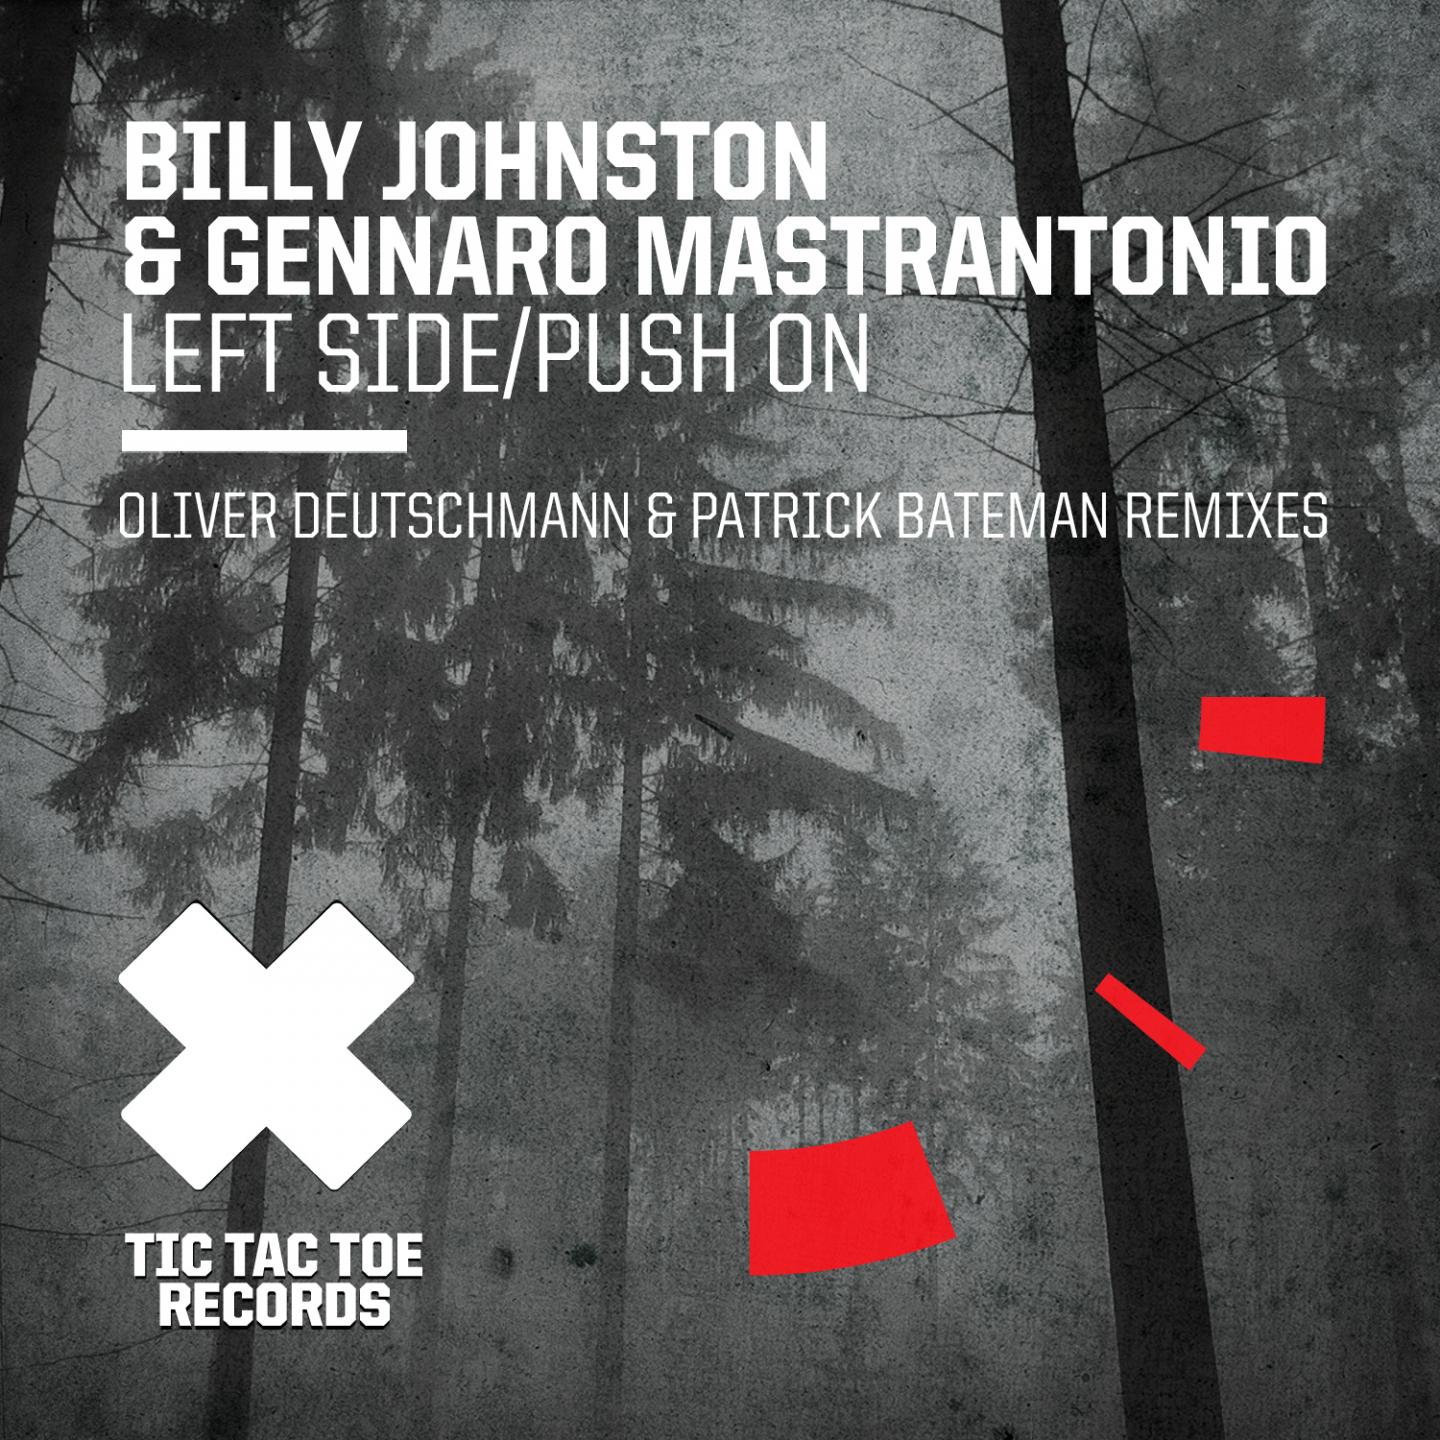 Billy Johnston - Push On (Patrick Bateman Pushing on Mix)